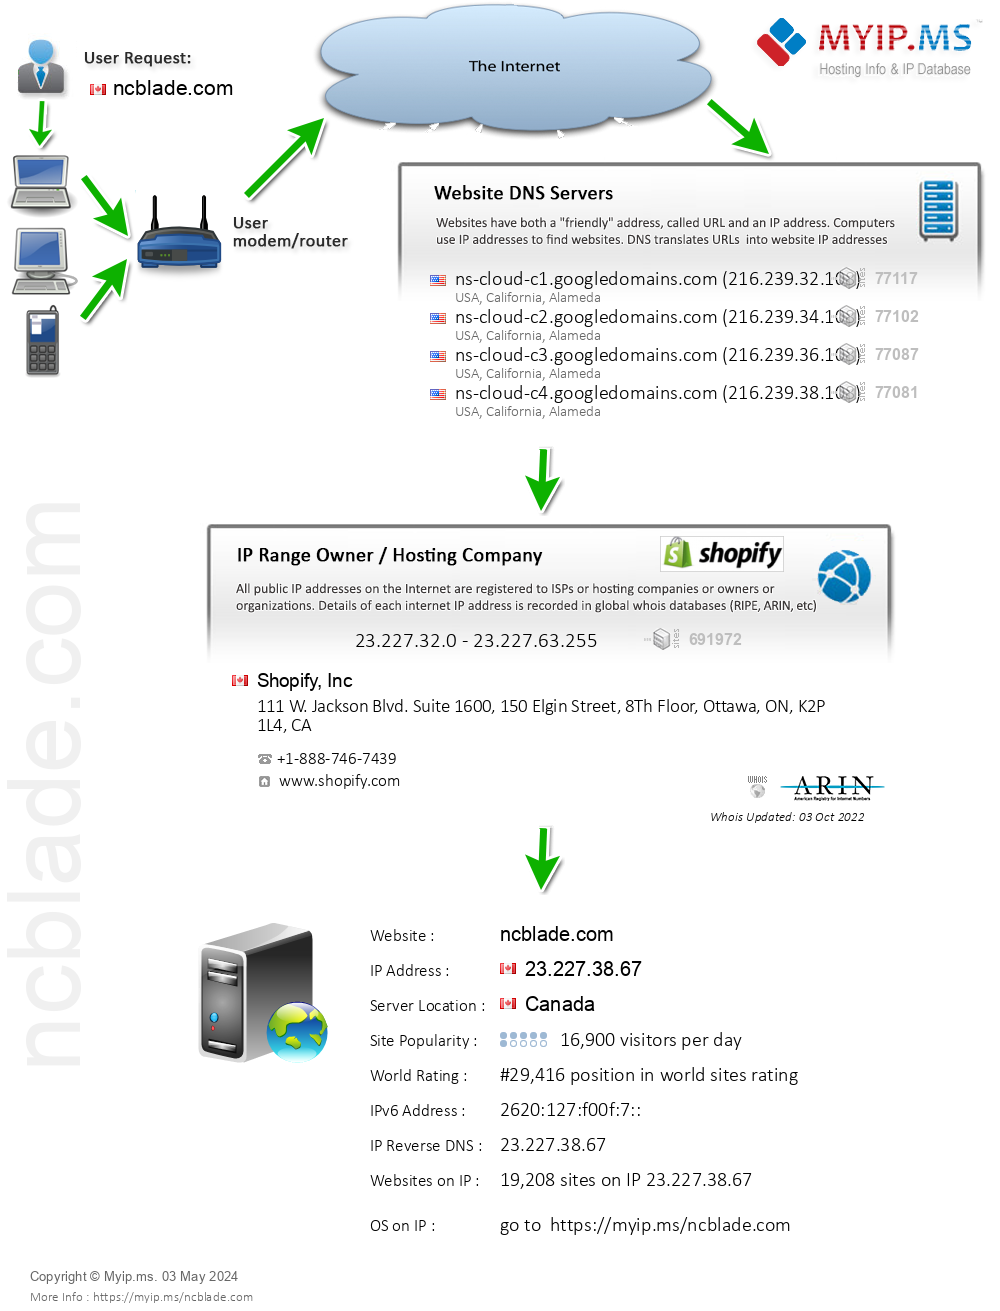 Ncblade.com - Website Hosting Visual IP Diagram